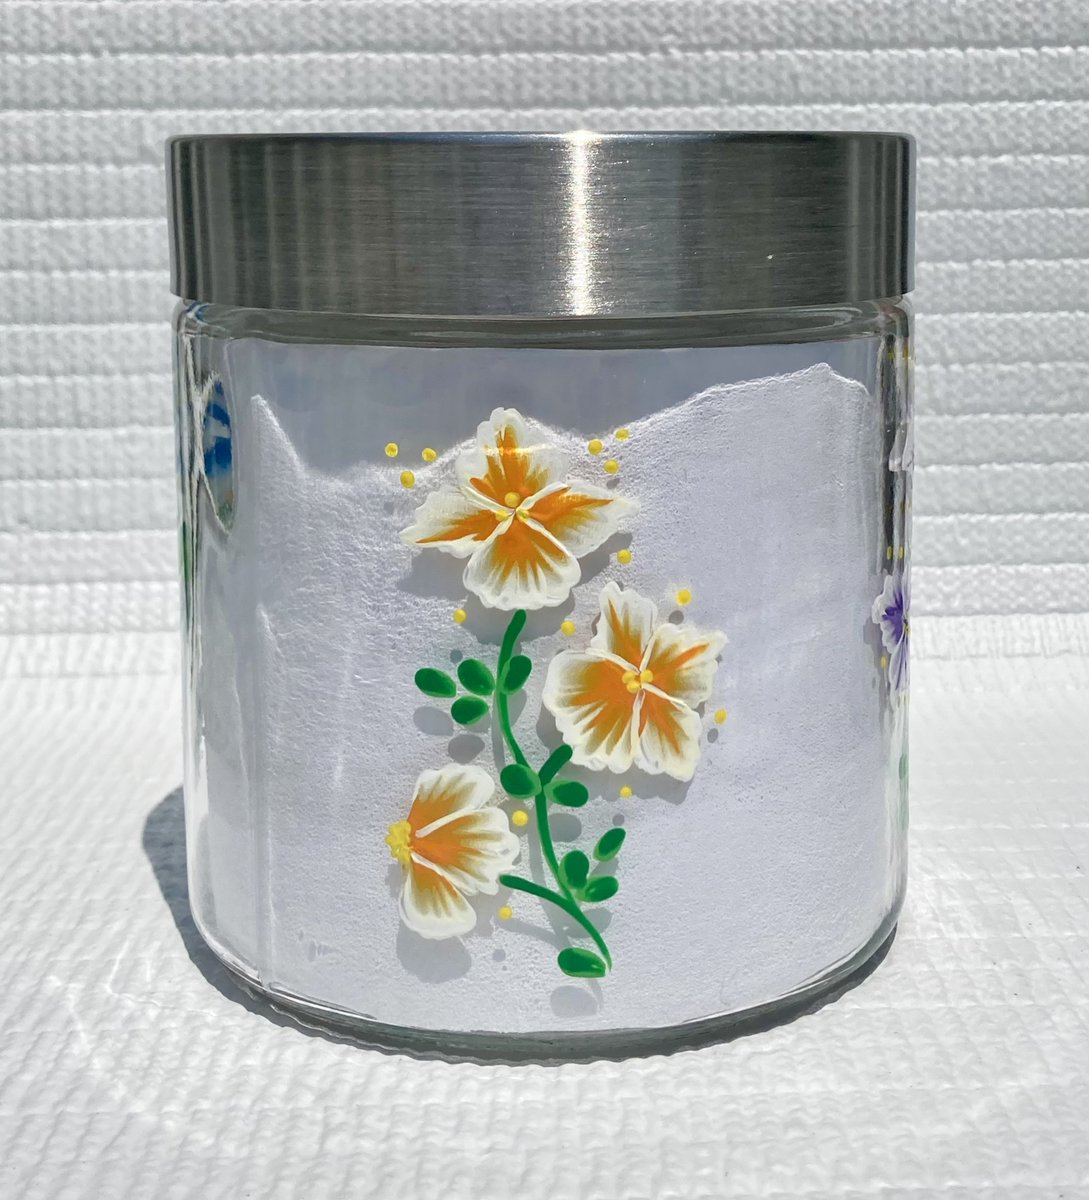 Floral canister etsy.com/listing/125434… #floralcanister #homedecor #kitchendecor #SMILEtt23 #CraftBizParty #cookiejar #candyjar #giftsformom #etsyshop